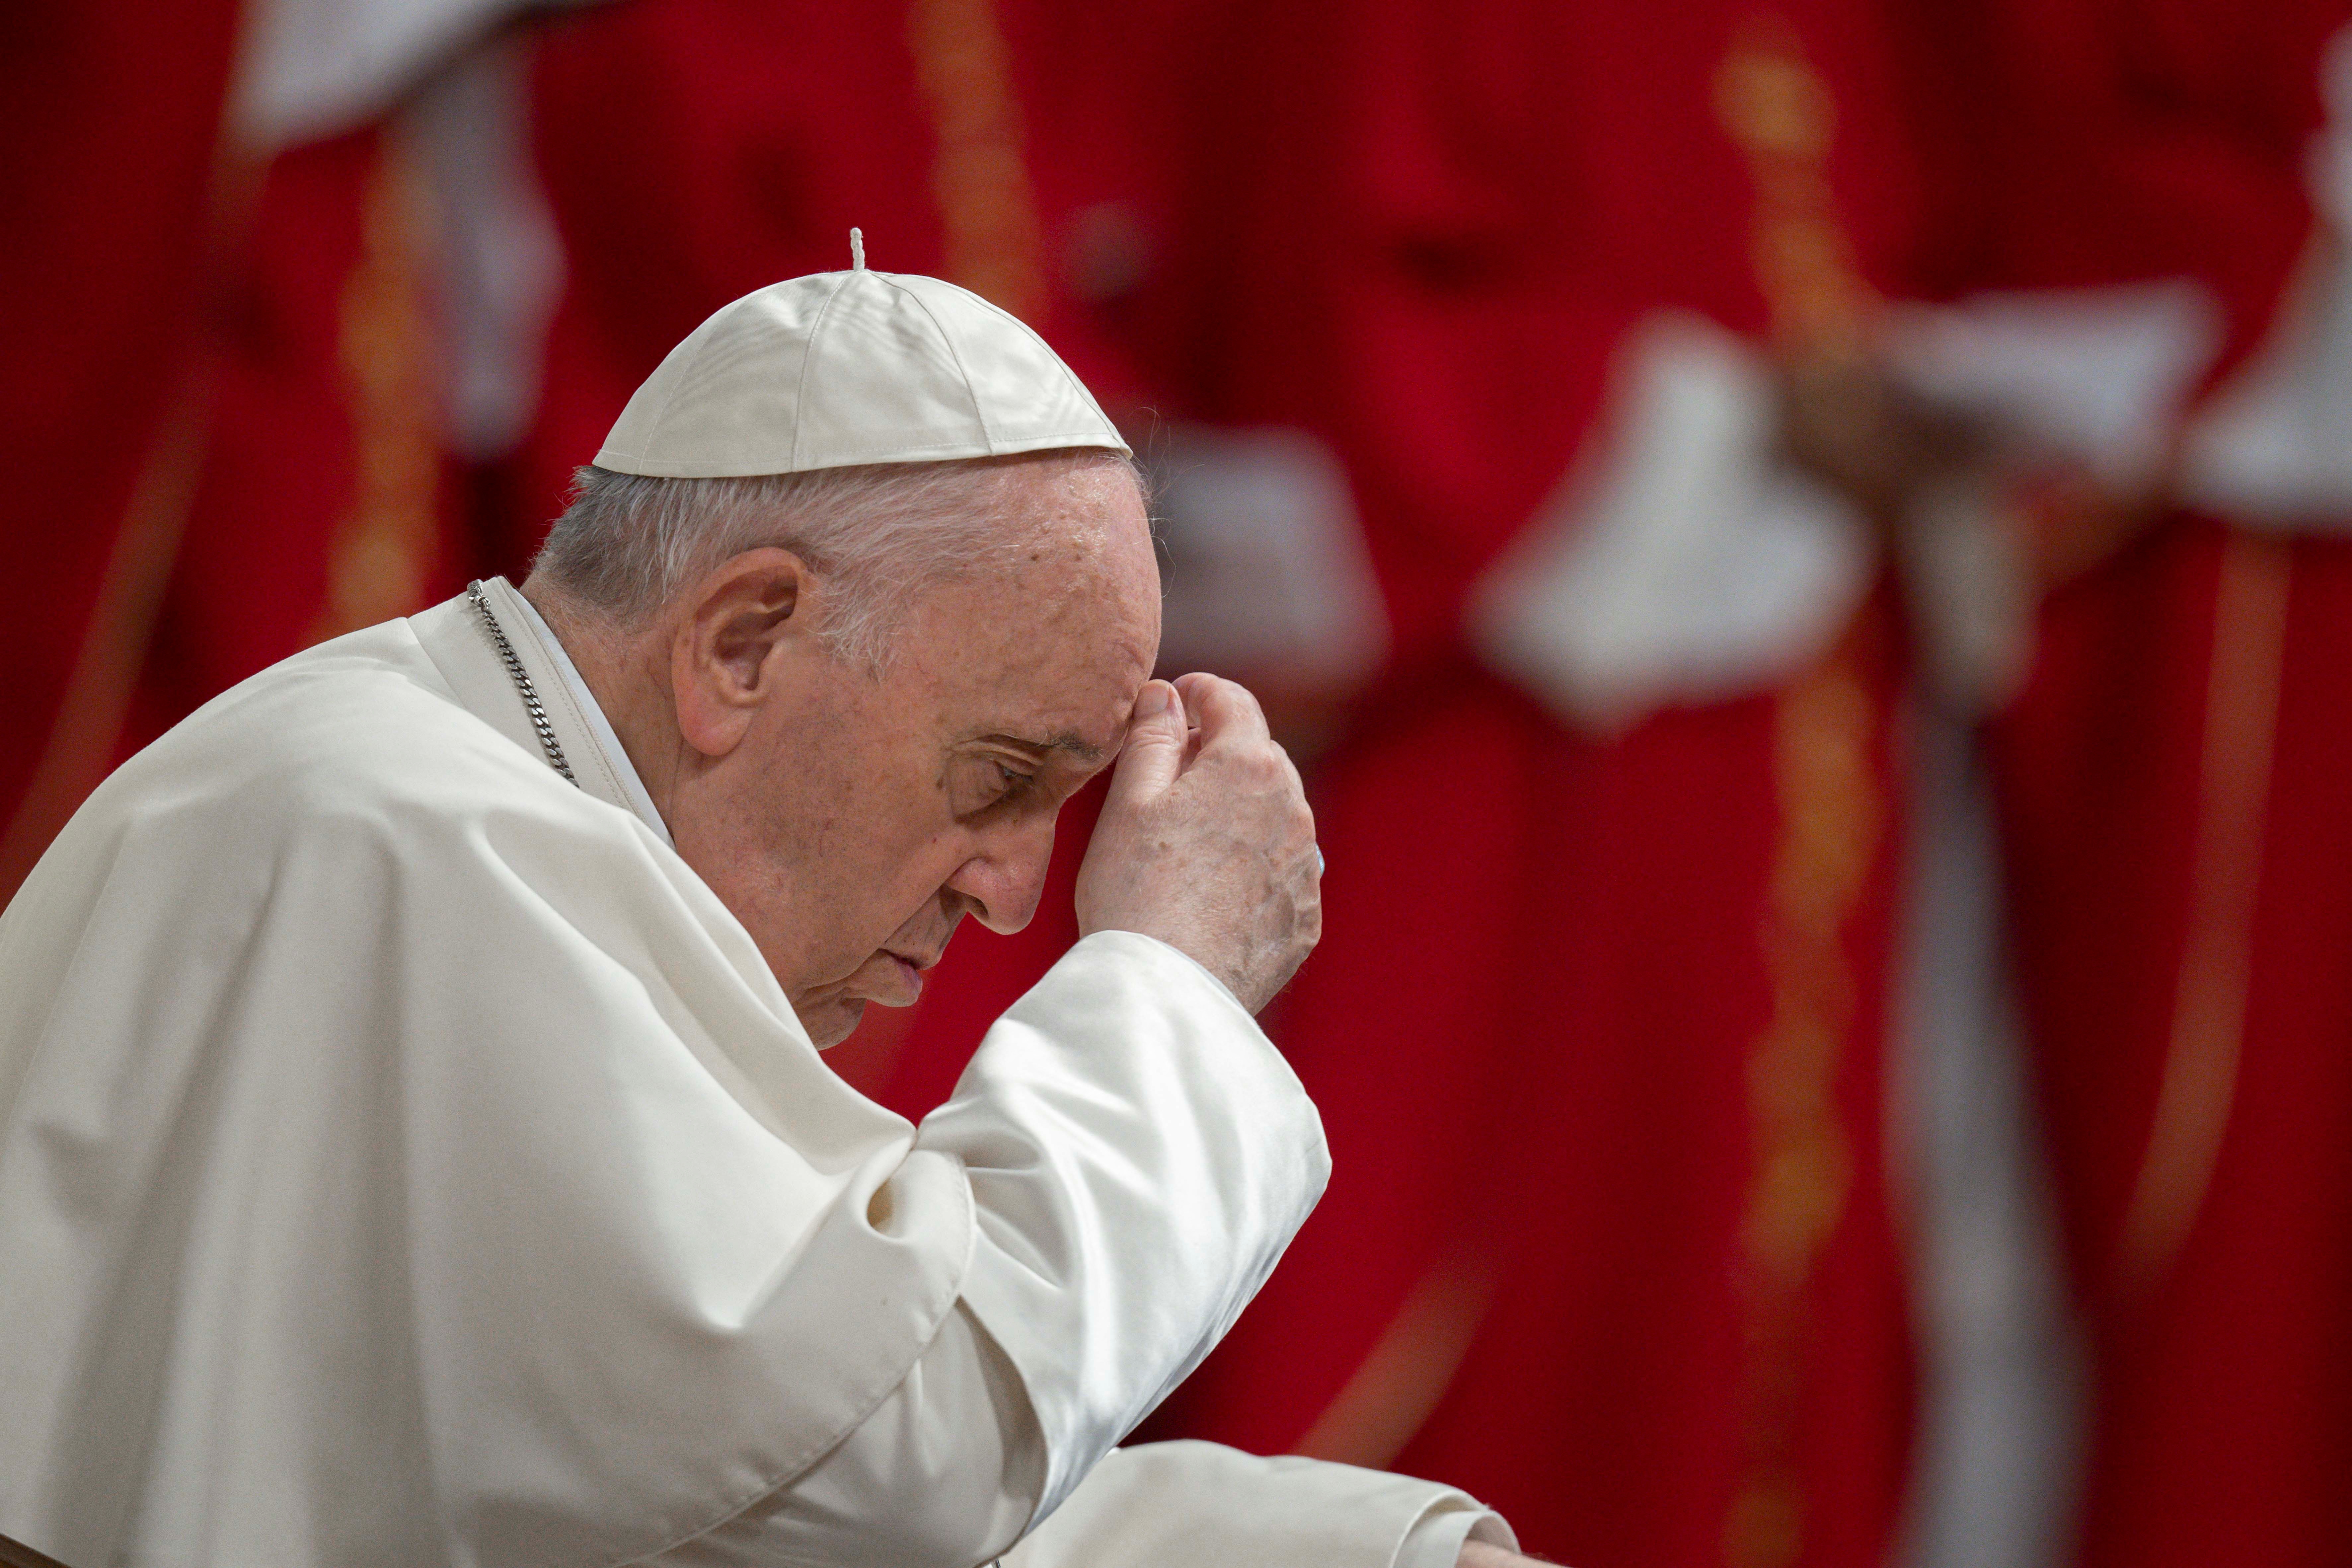 El papa Francisco lamentó la tragedia de migrantes fallecidos en Texas y Melilla: “Perseguían la esperanza de una vida mejor”